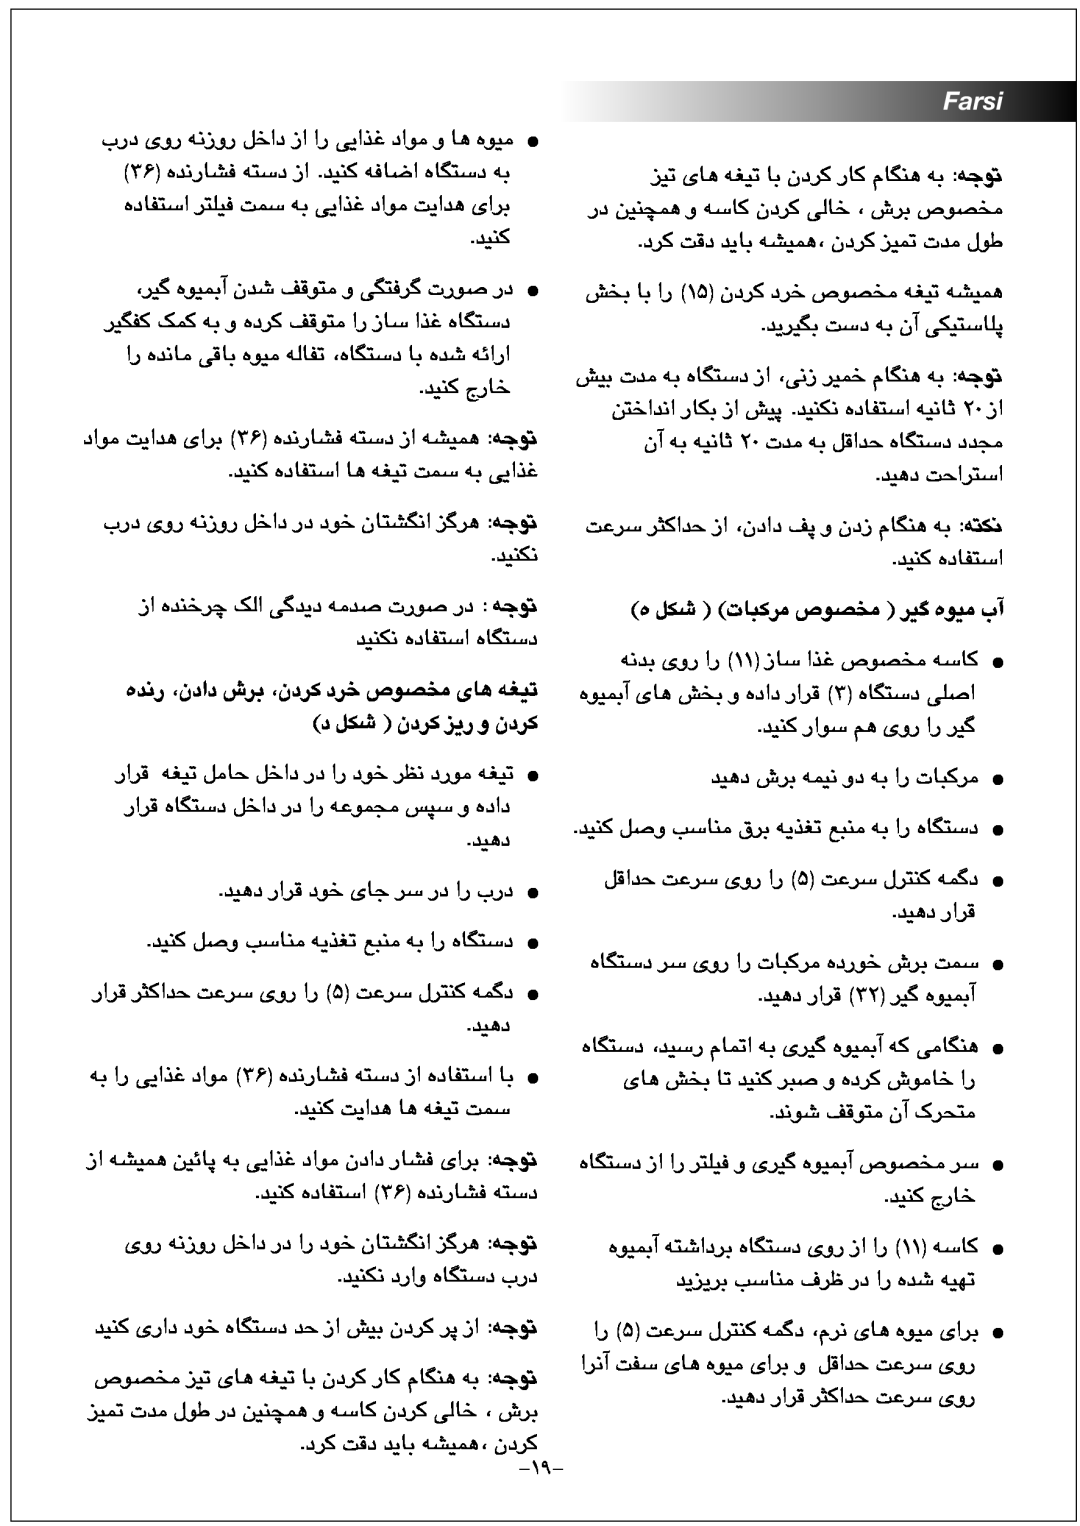 Black & Decker FX1000 manual Farsi, ﻩ ﻞﮑﺷ ﺕﺎﺒﮐﺮﻣ ﺹﻮﺼﺨﻣ ﺮﯿﮔ ﻩﻮﯿﻣ ﺏﺁ 